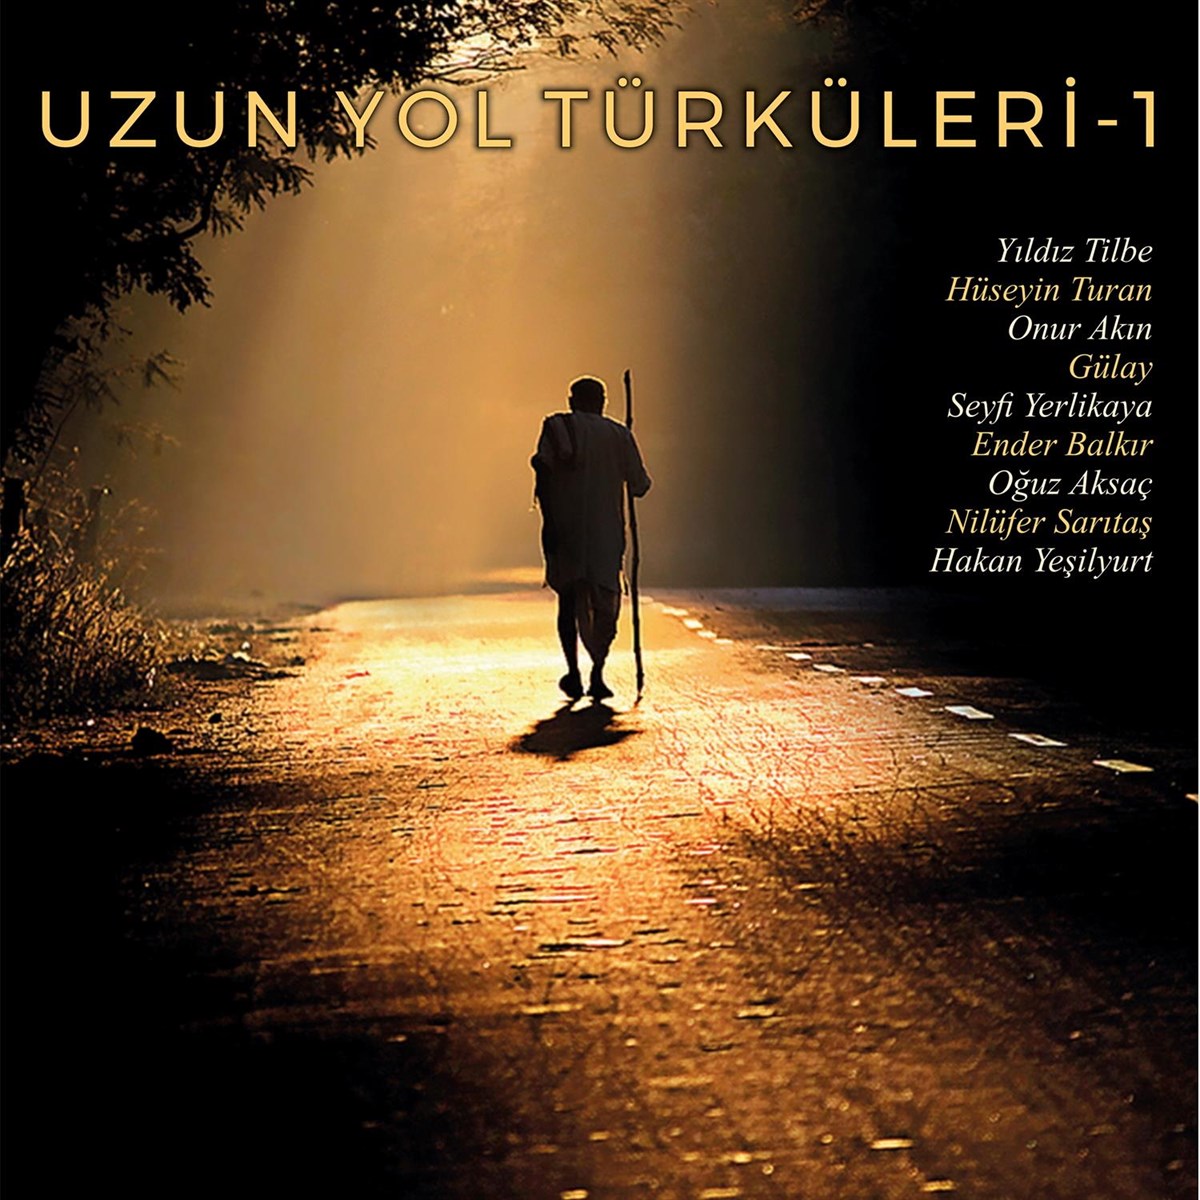 Uzun Yol Türküleri Vol:1 – Plak